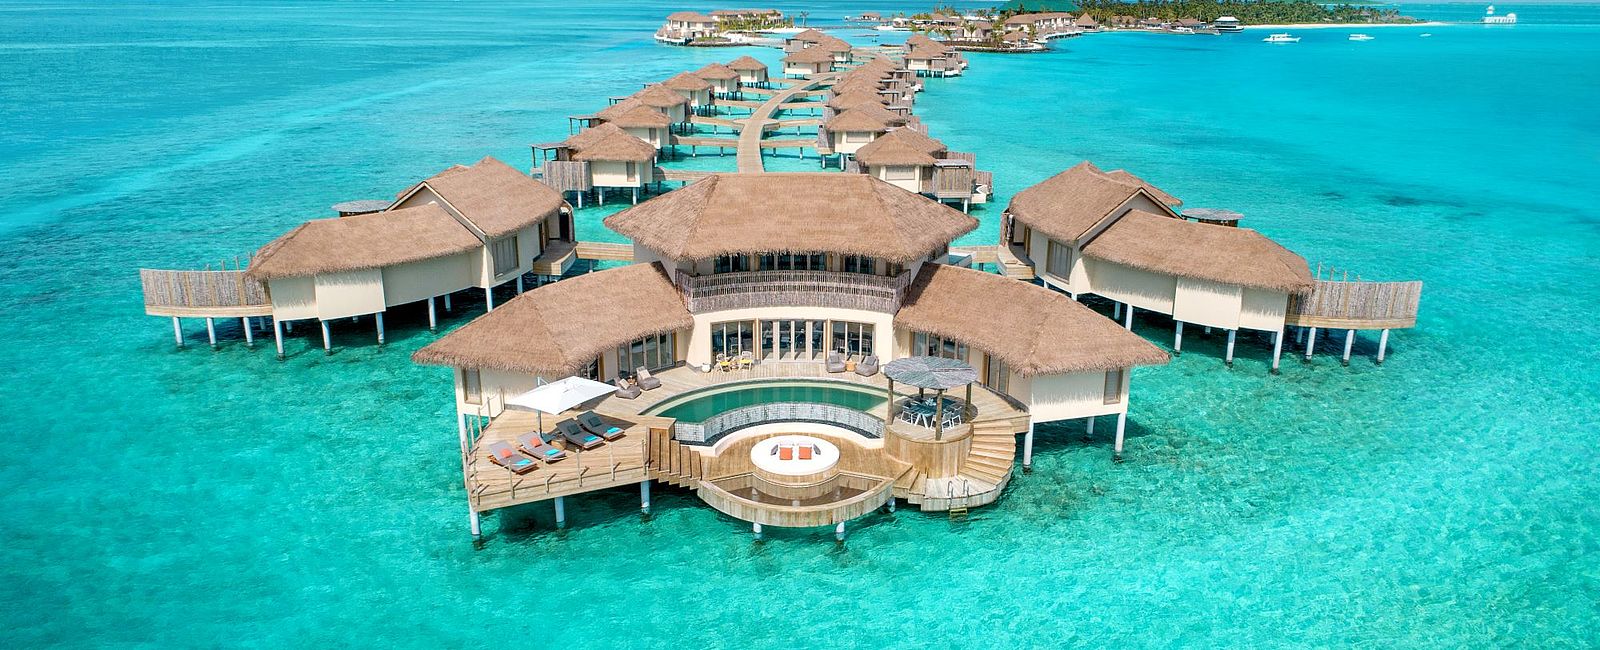 HOTEL ANGEBOTE
 Festtags-Angebote im InterContinental Maldives 
